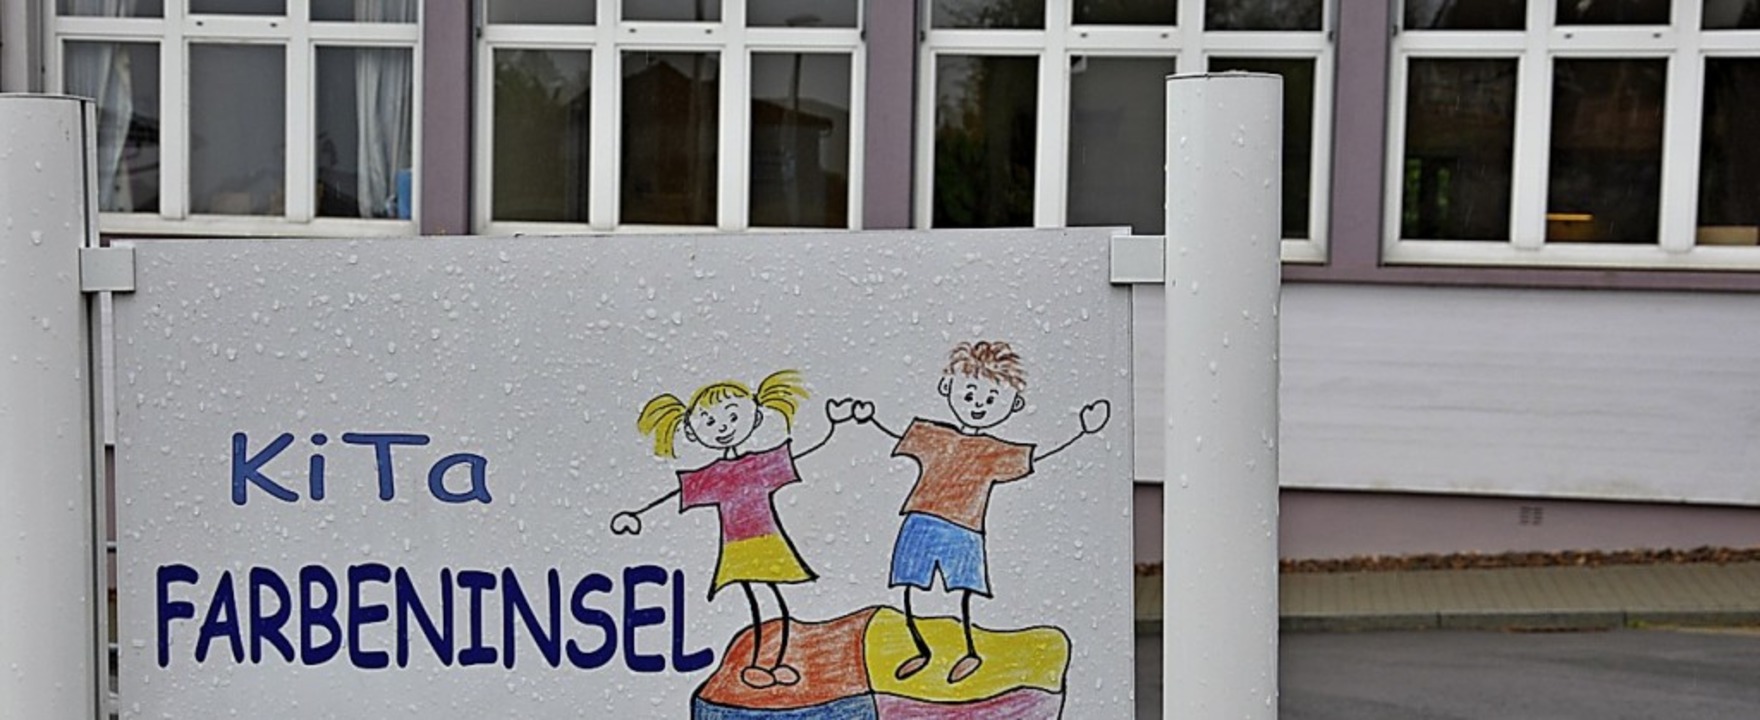 Täglich kommen neue Kinder zur Notbetreuung in die Kita Farbeninsel.  | Foto: Jutta Schütz